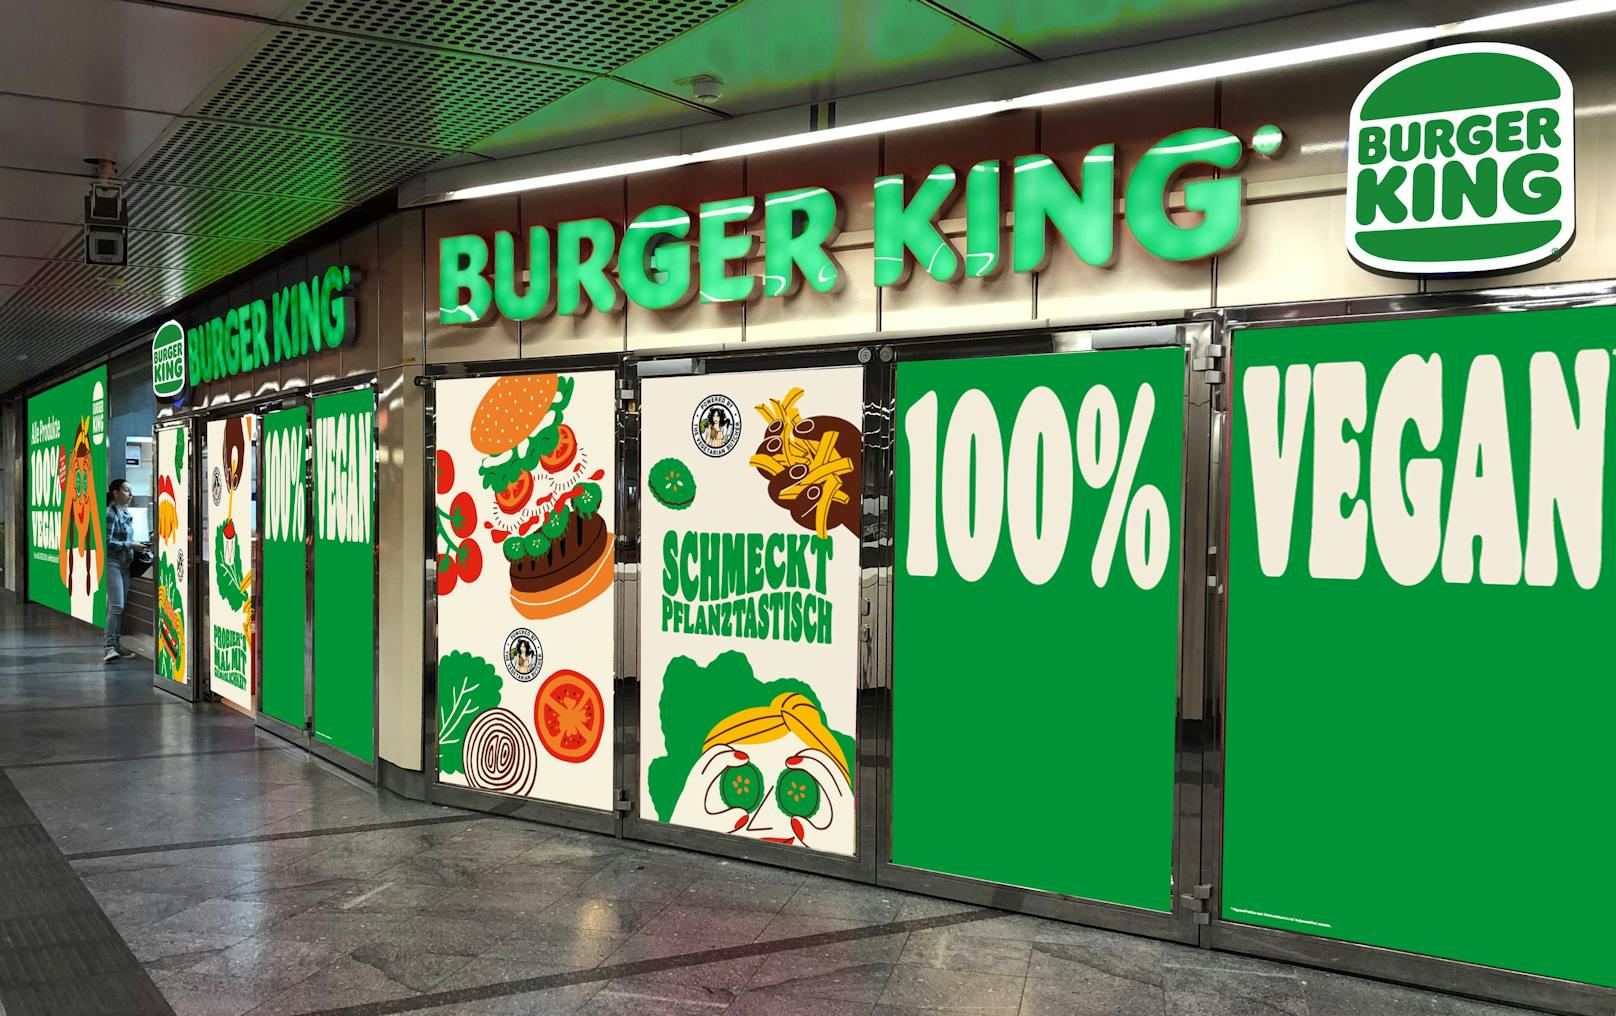 Ab Dienstag gibt es vegane Köstlichkeiten bei Burger King. Alles 100% vegan!